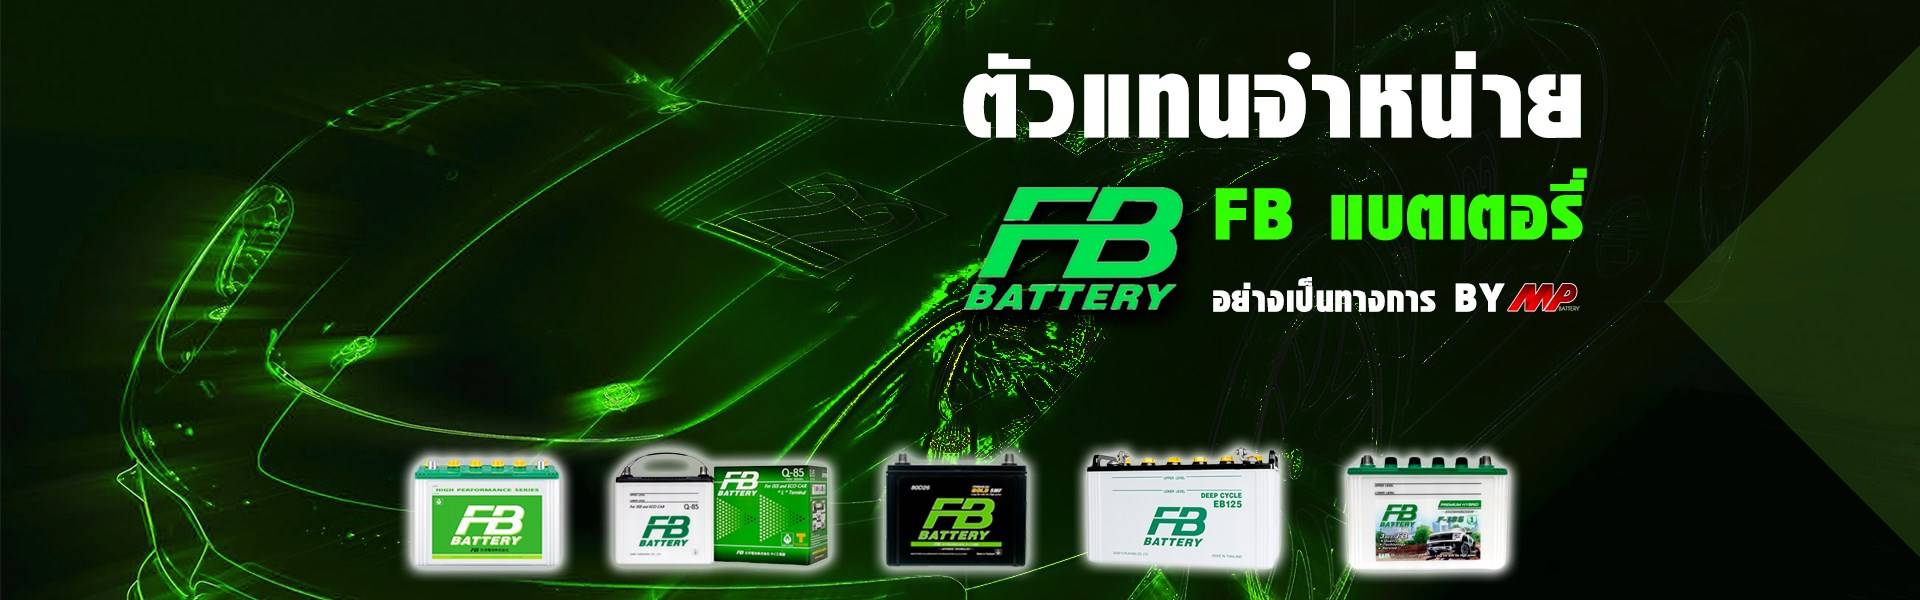 ร้านแบตเตอรี่ เชียงใหม่ fb battery